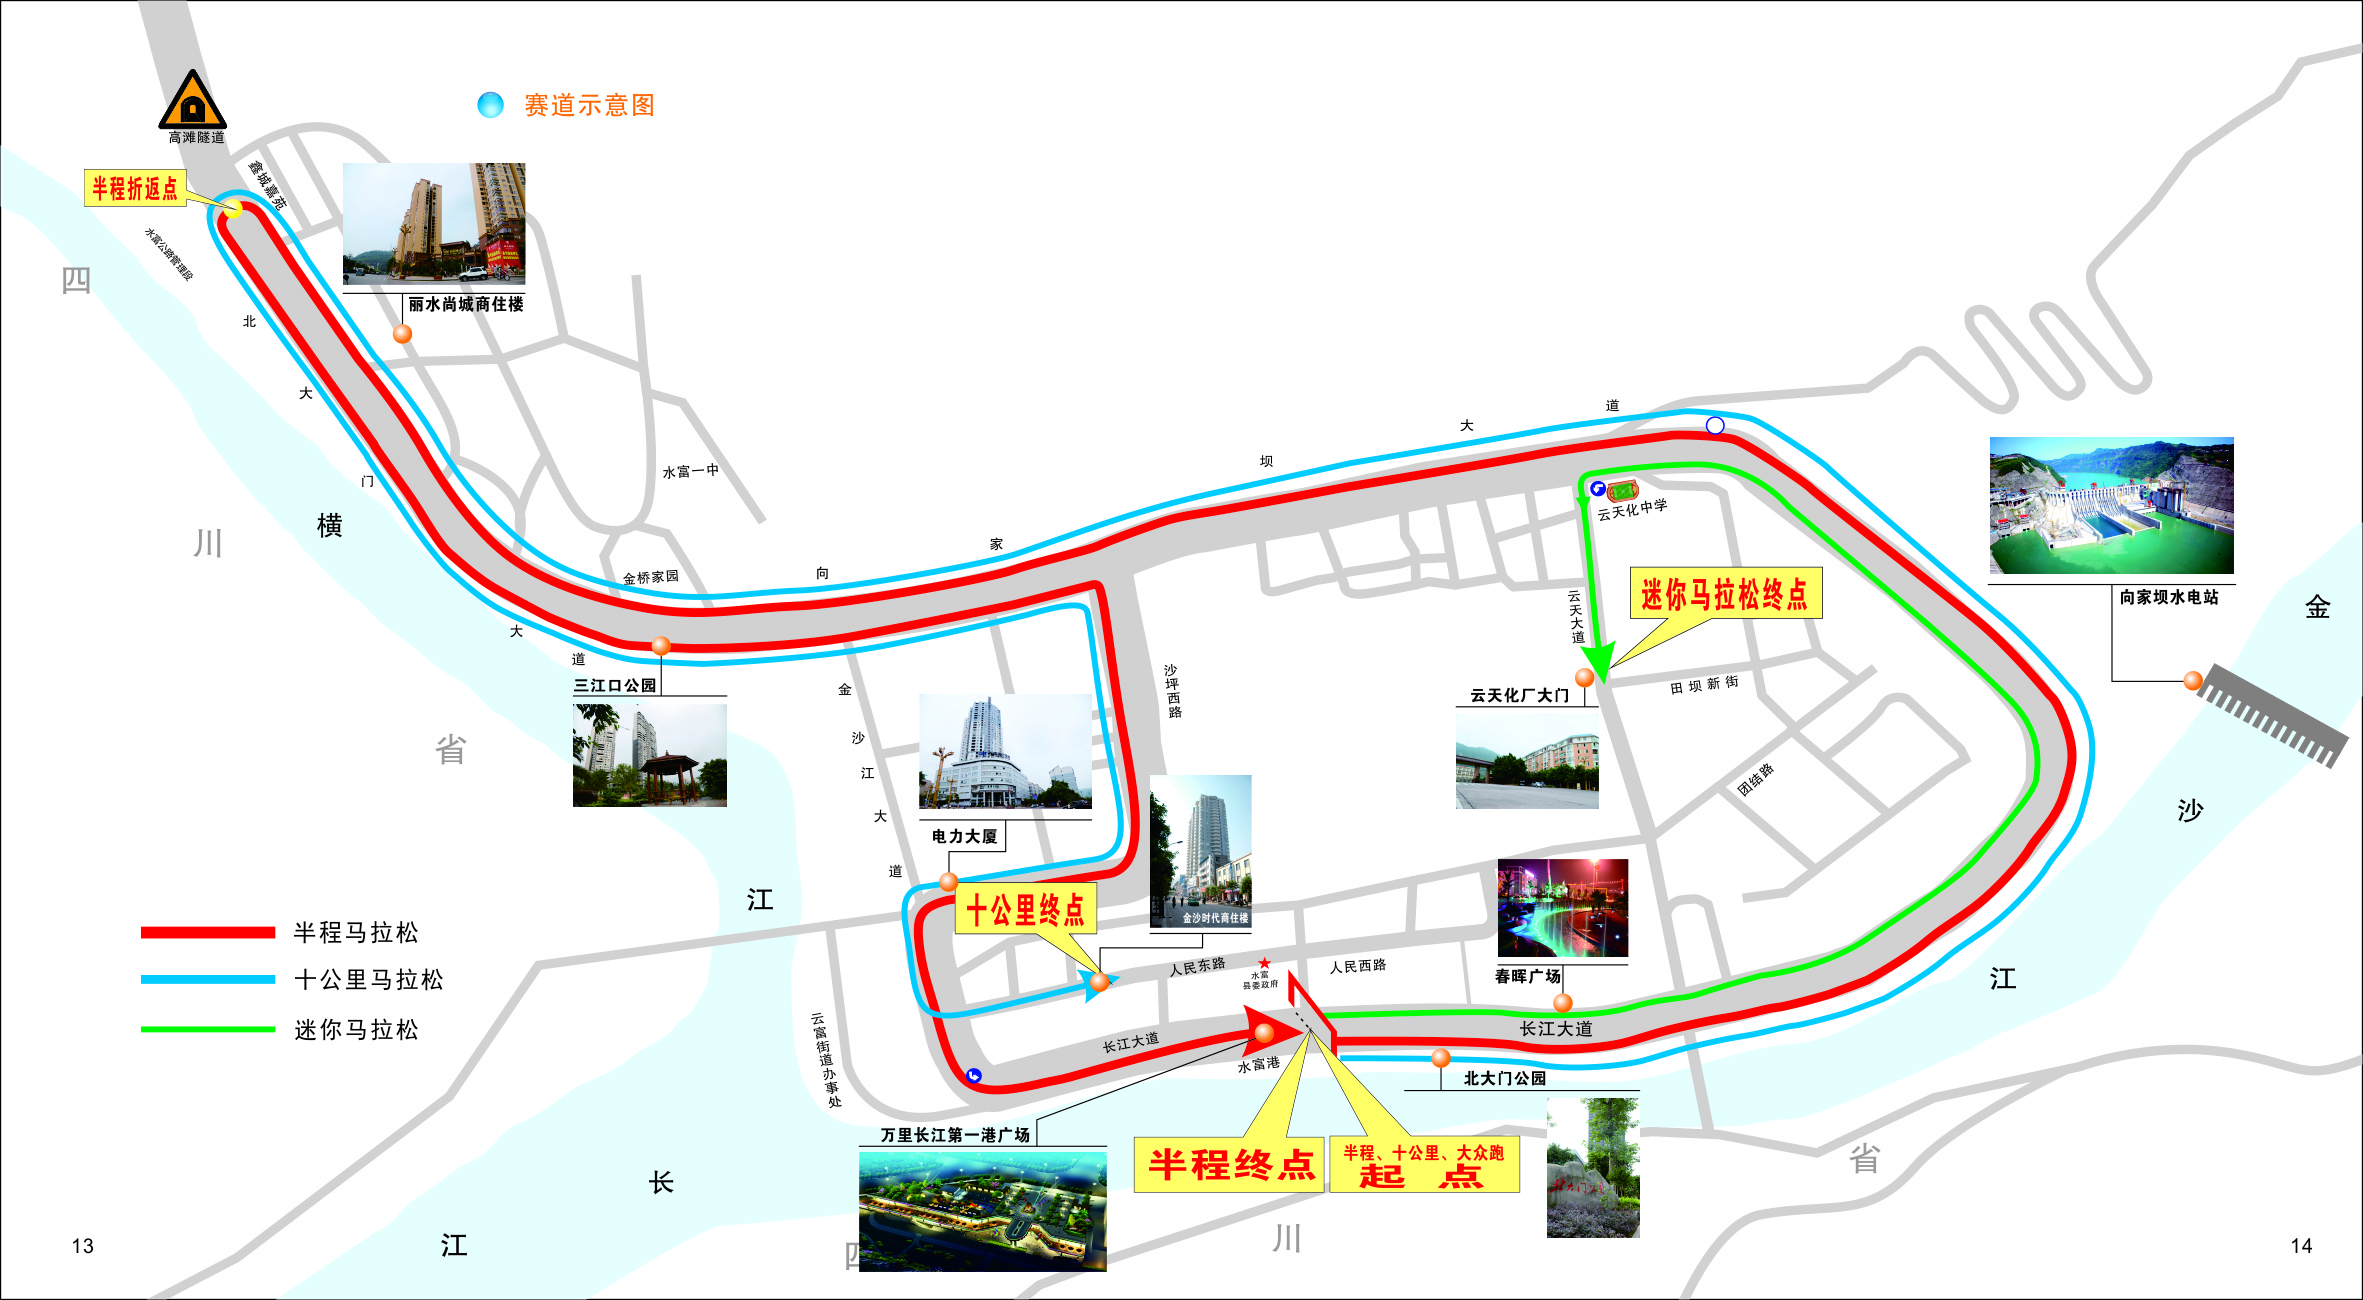 2017雲南·水富國際半程馬拉松賽